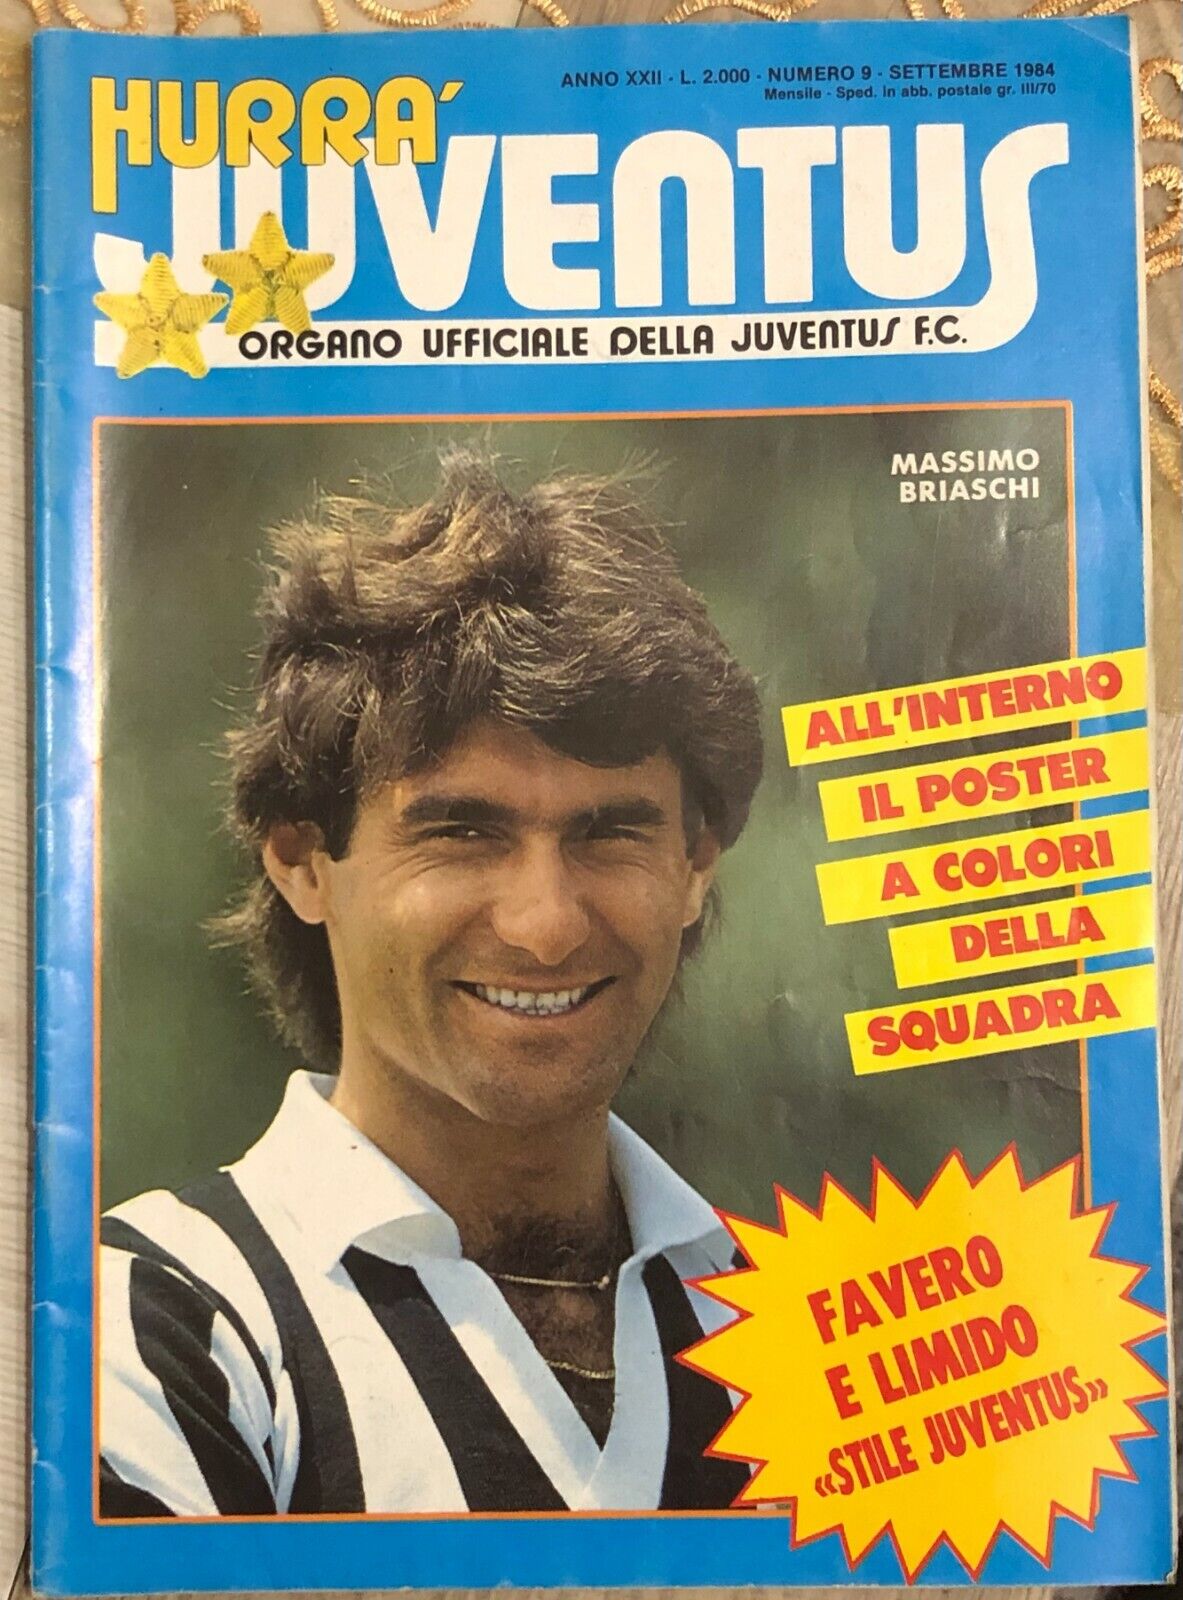 Hurr? Juventus n. 9/1984 di Aa.vv.,  1984,  Juventus F.c.